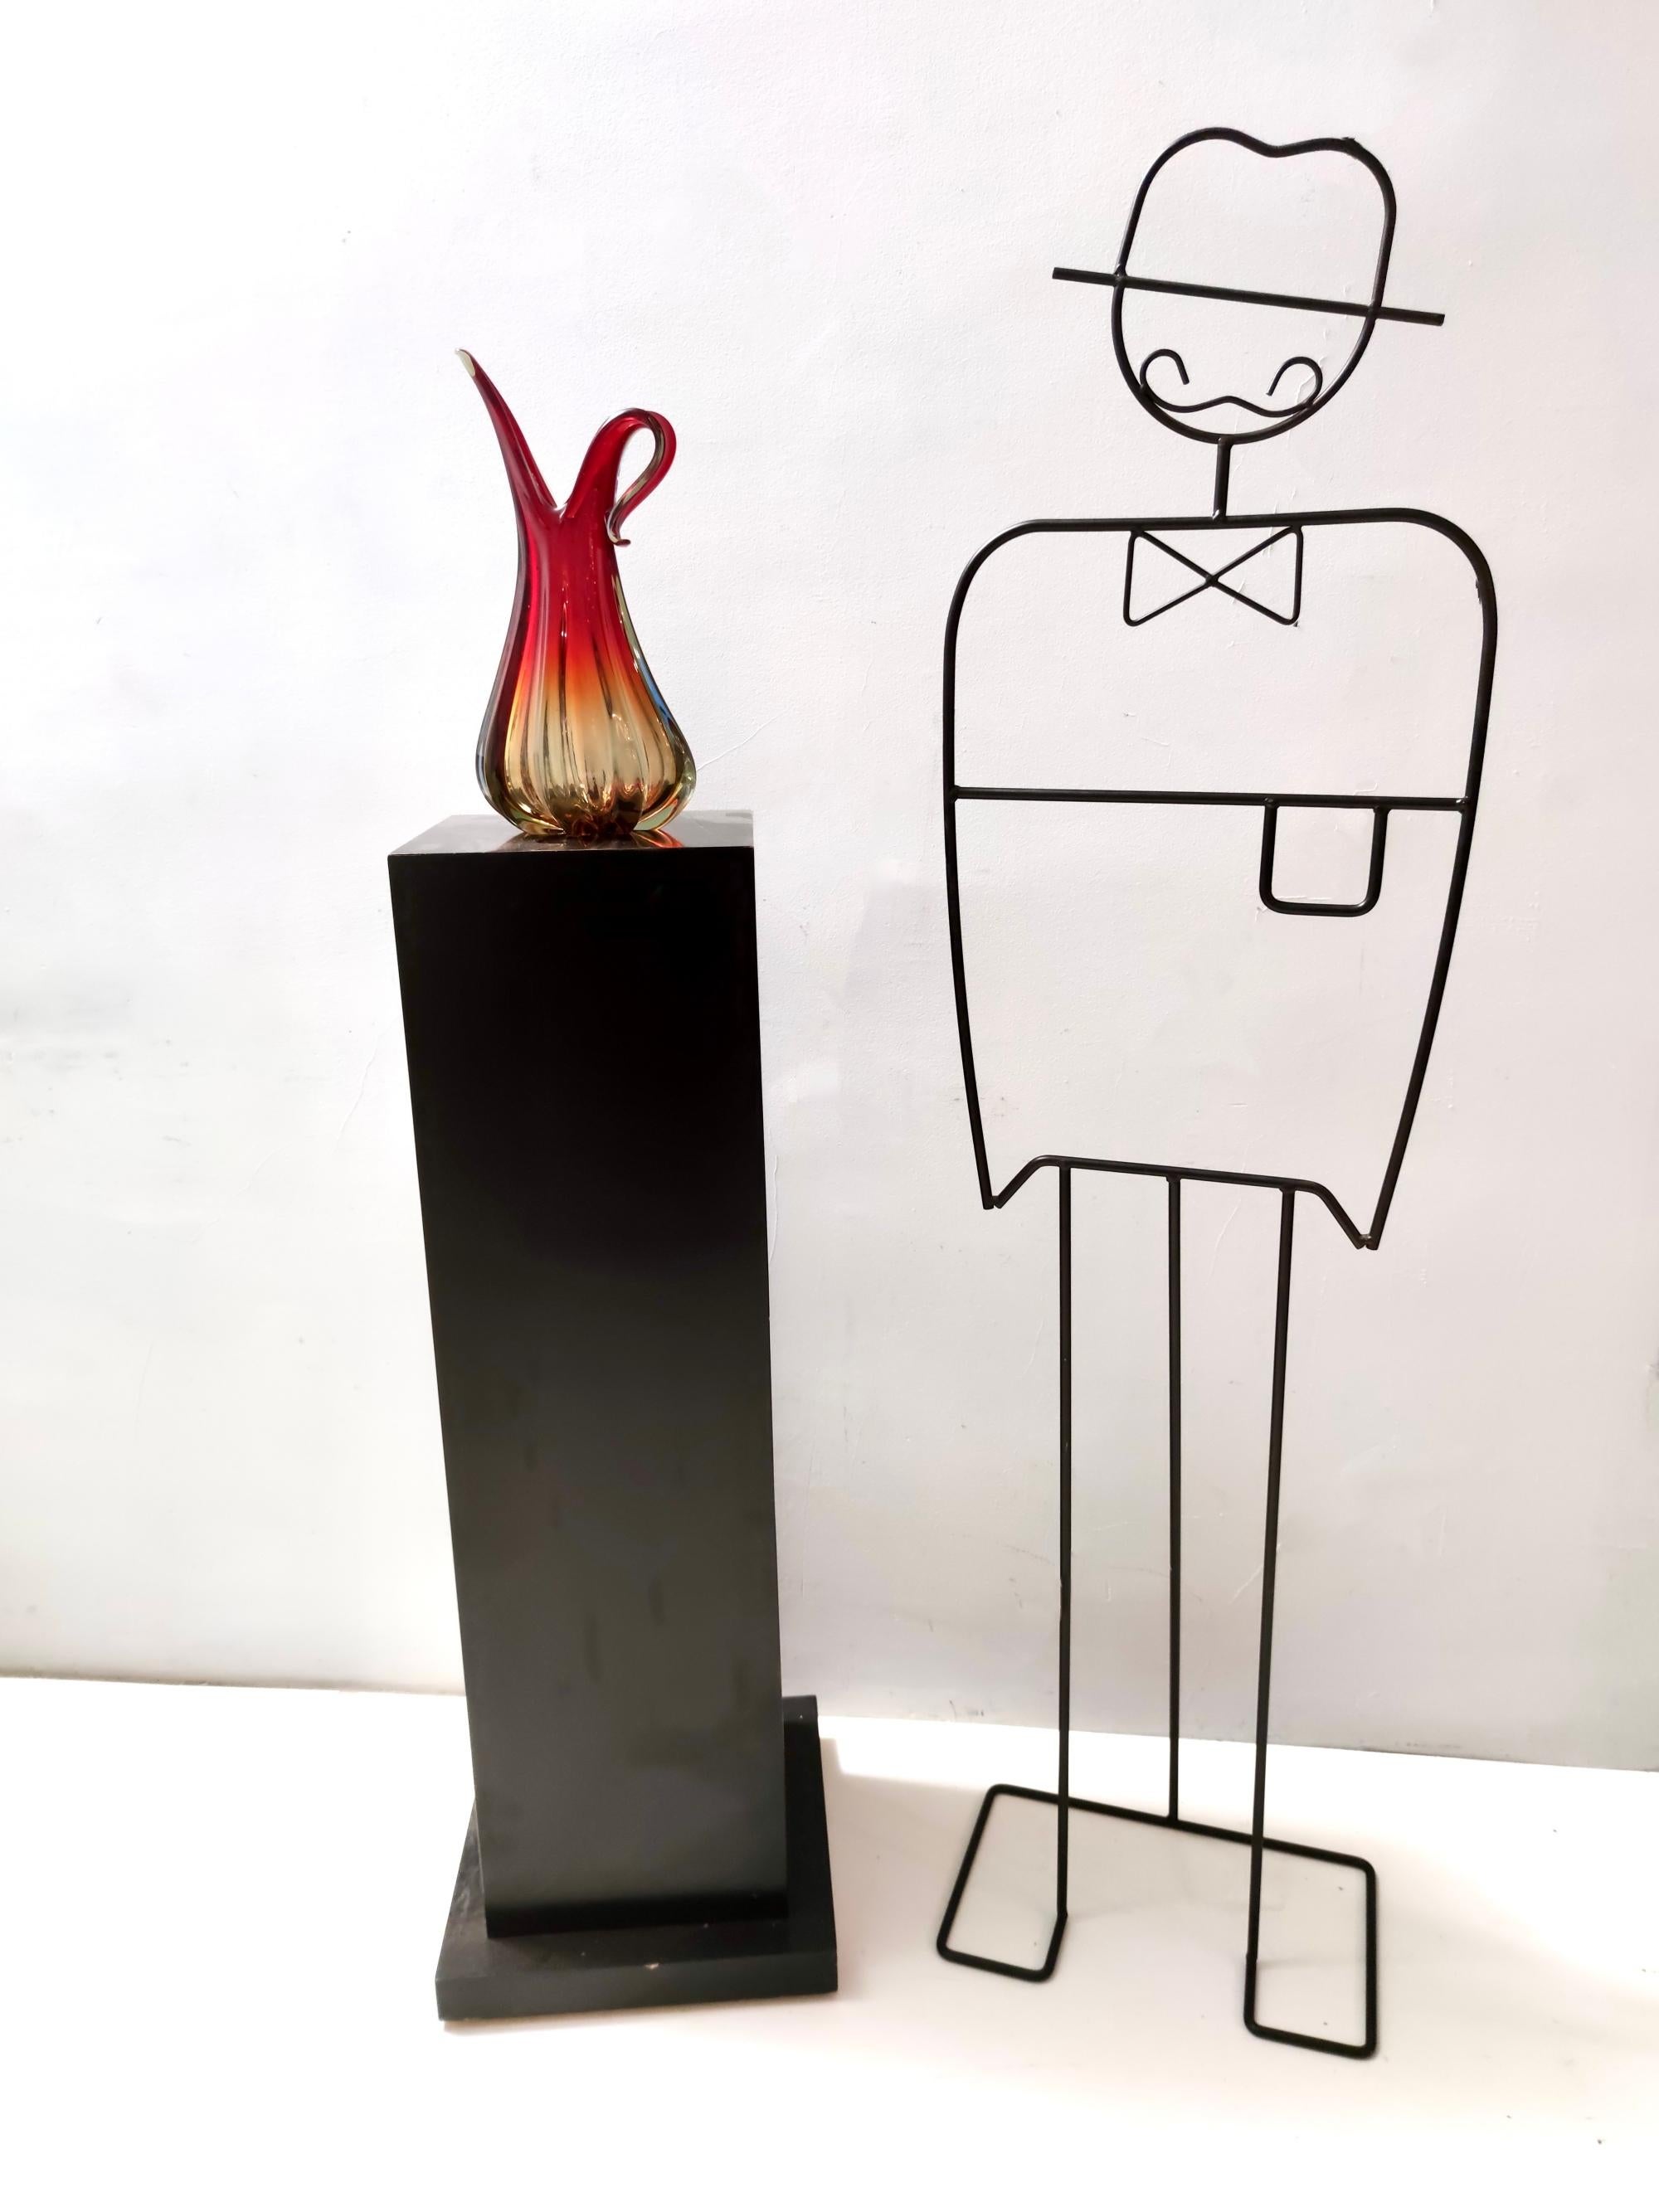 Hergestellt in Italien, 1960er Jahre. 
Diese Vase ist aus rotem, orangefarbenem und gelbem Murano-Glas gefertigt, eine schöne Kombination, die einen Flammeneffekt erzeugt. 
Der äußere Teil ist gerippt.
Da es sich um ein Vintage-Stück handelt, kann